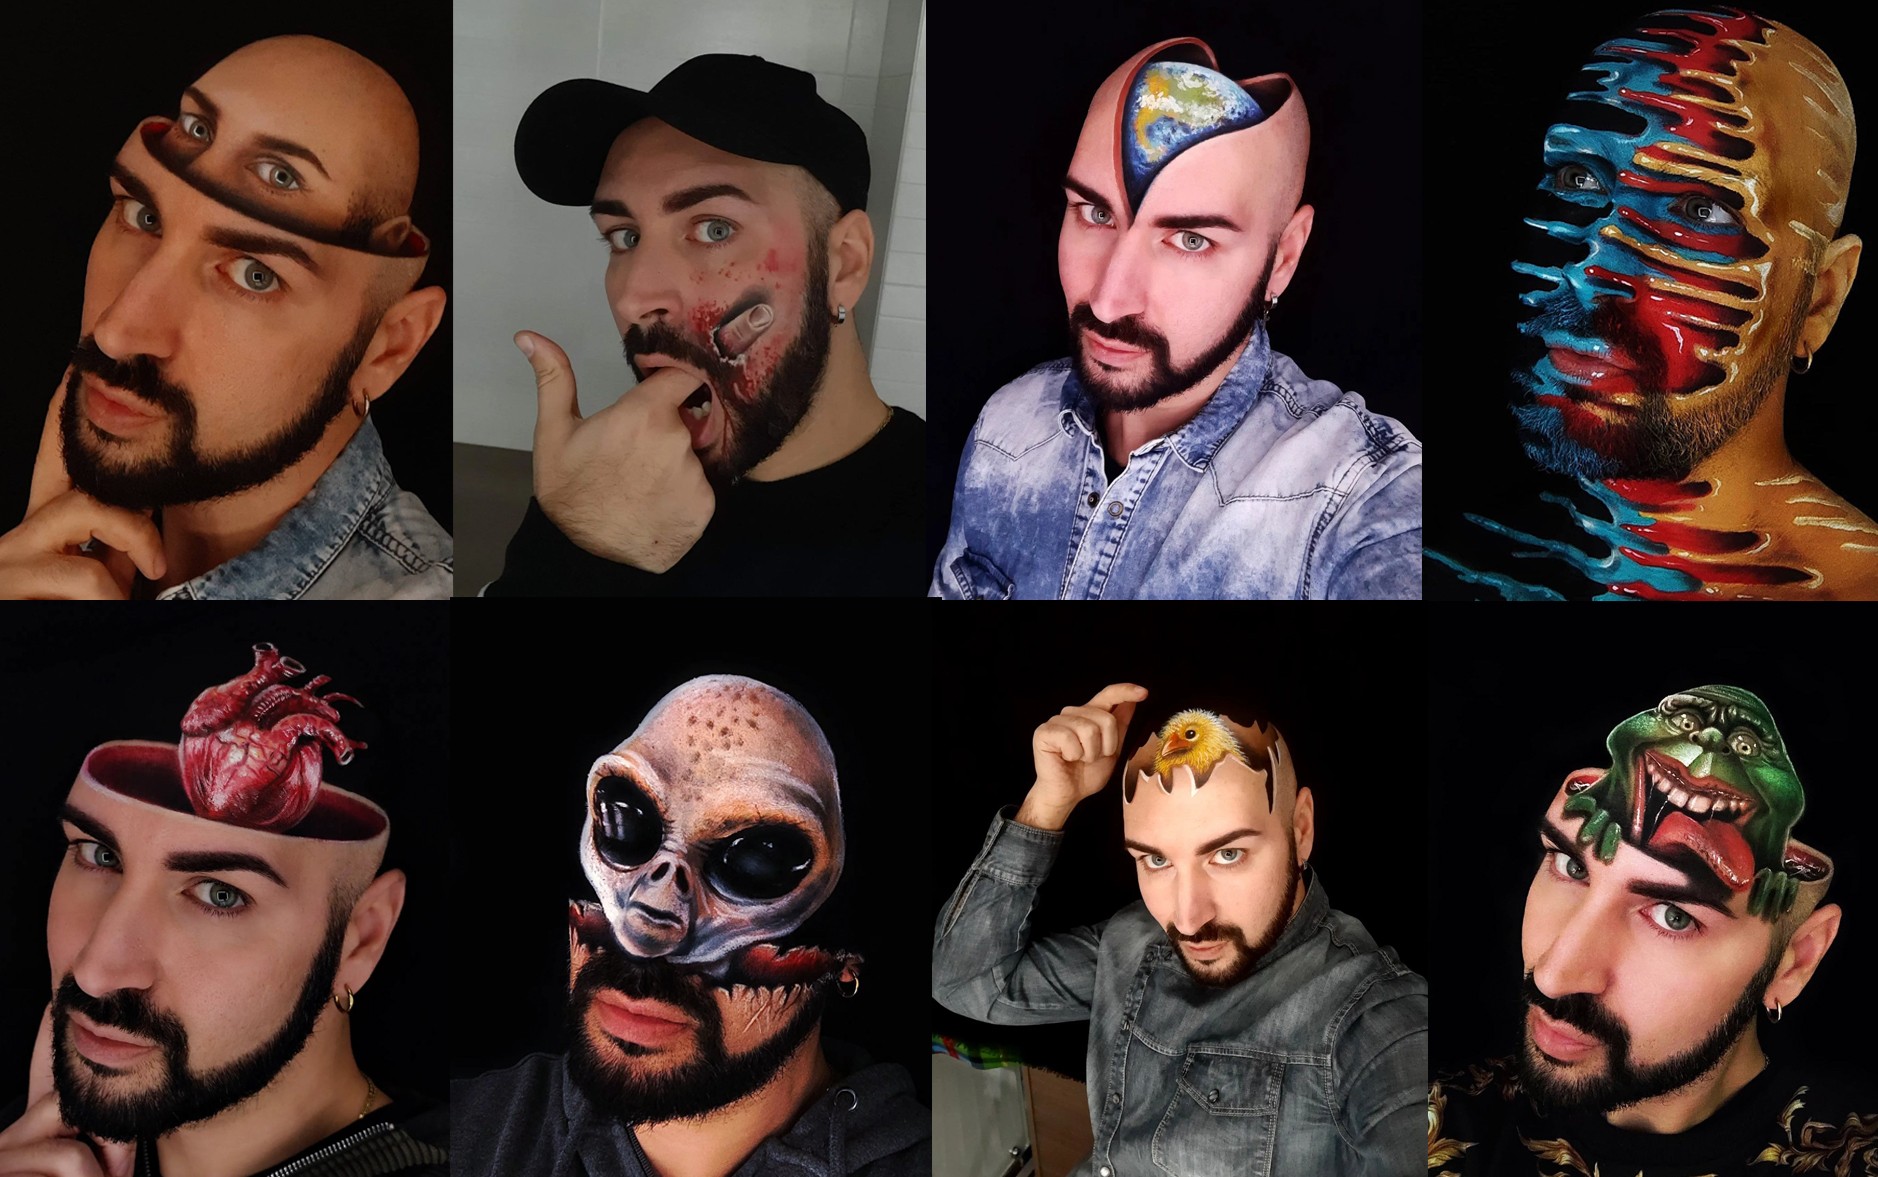 Maquiador italiano faz pinturas em 3D na própria cabeça e diz que nunca frequentou escola de arte